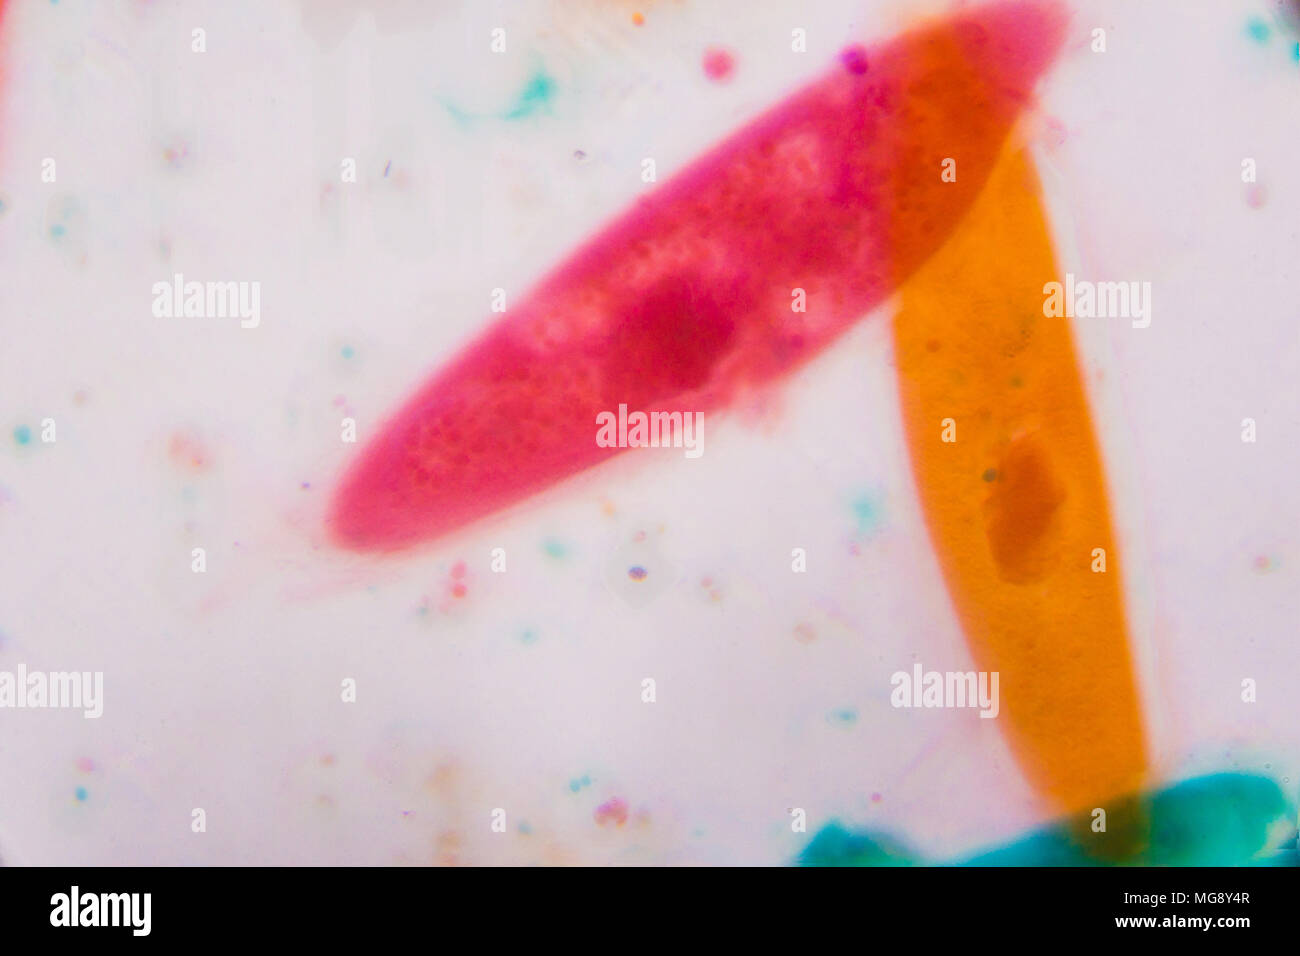 Paramecio caudatum bajo el microscopio - formas abstractas en color verde, rojo, naranja y marrón sobre fondo blanco. Foto de stock